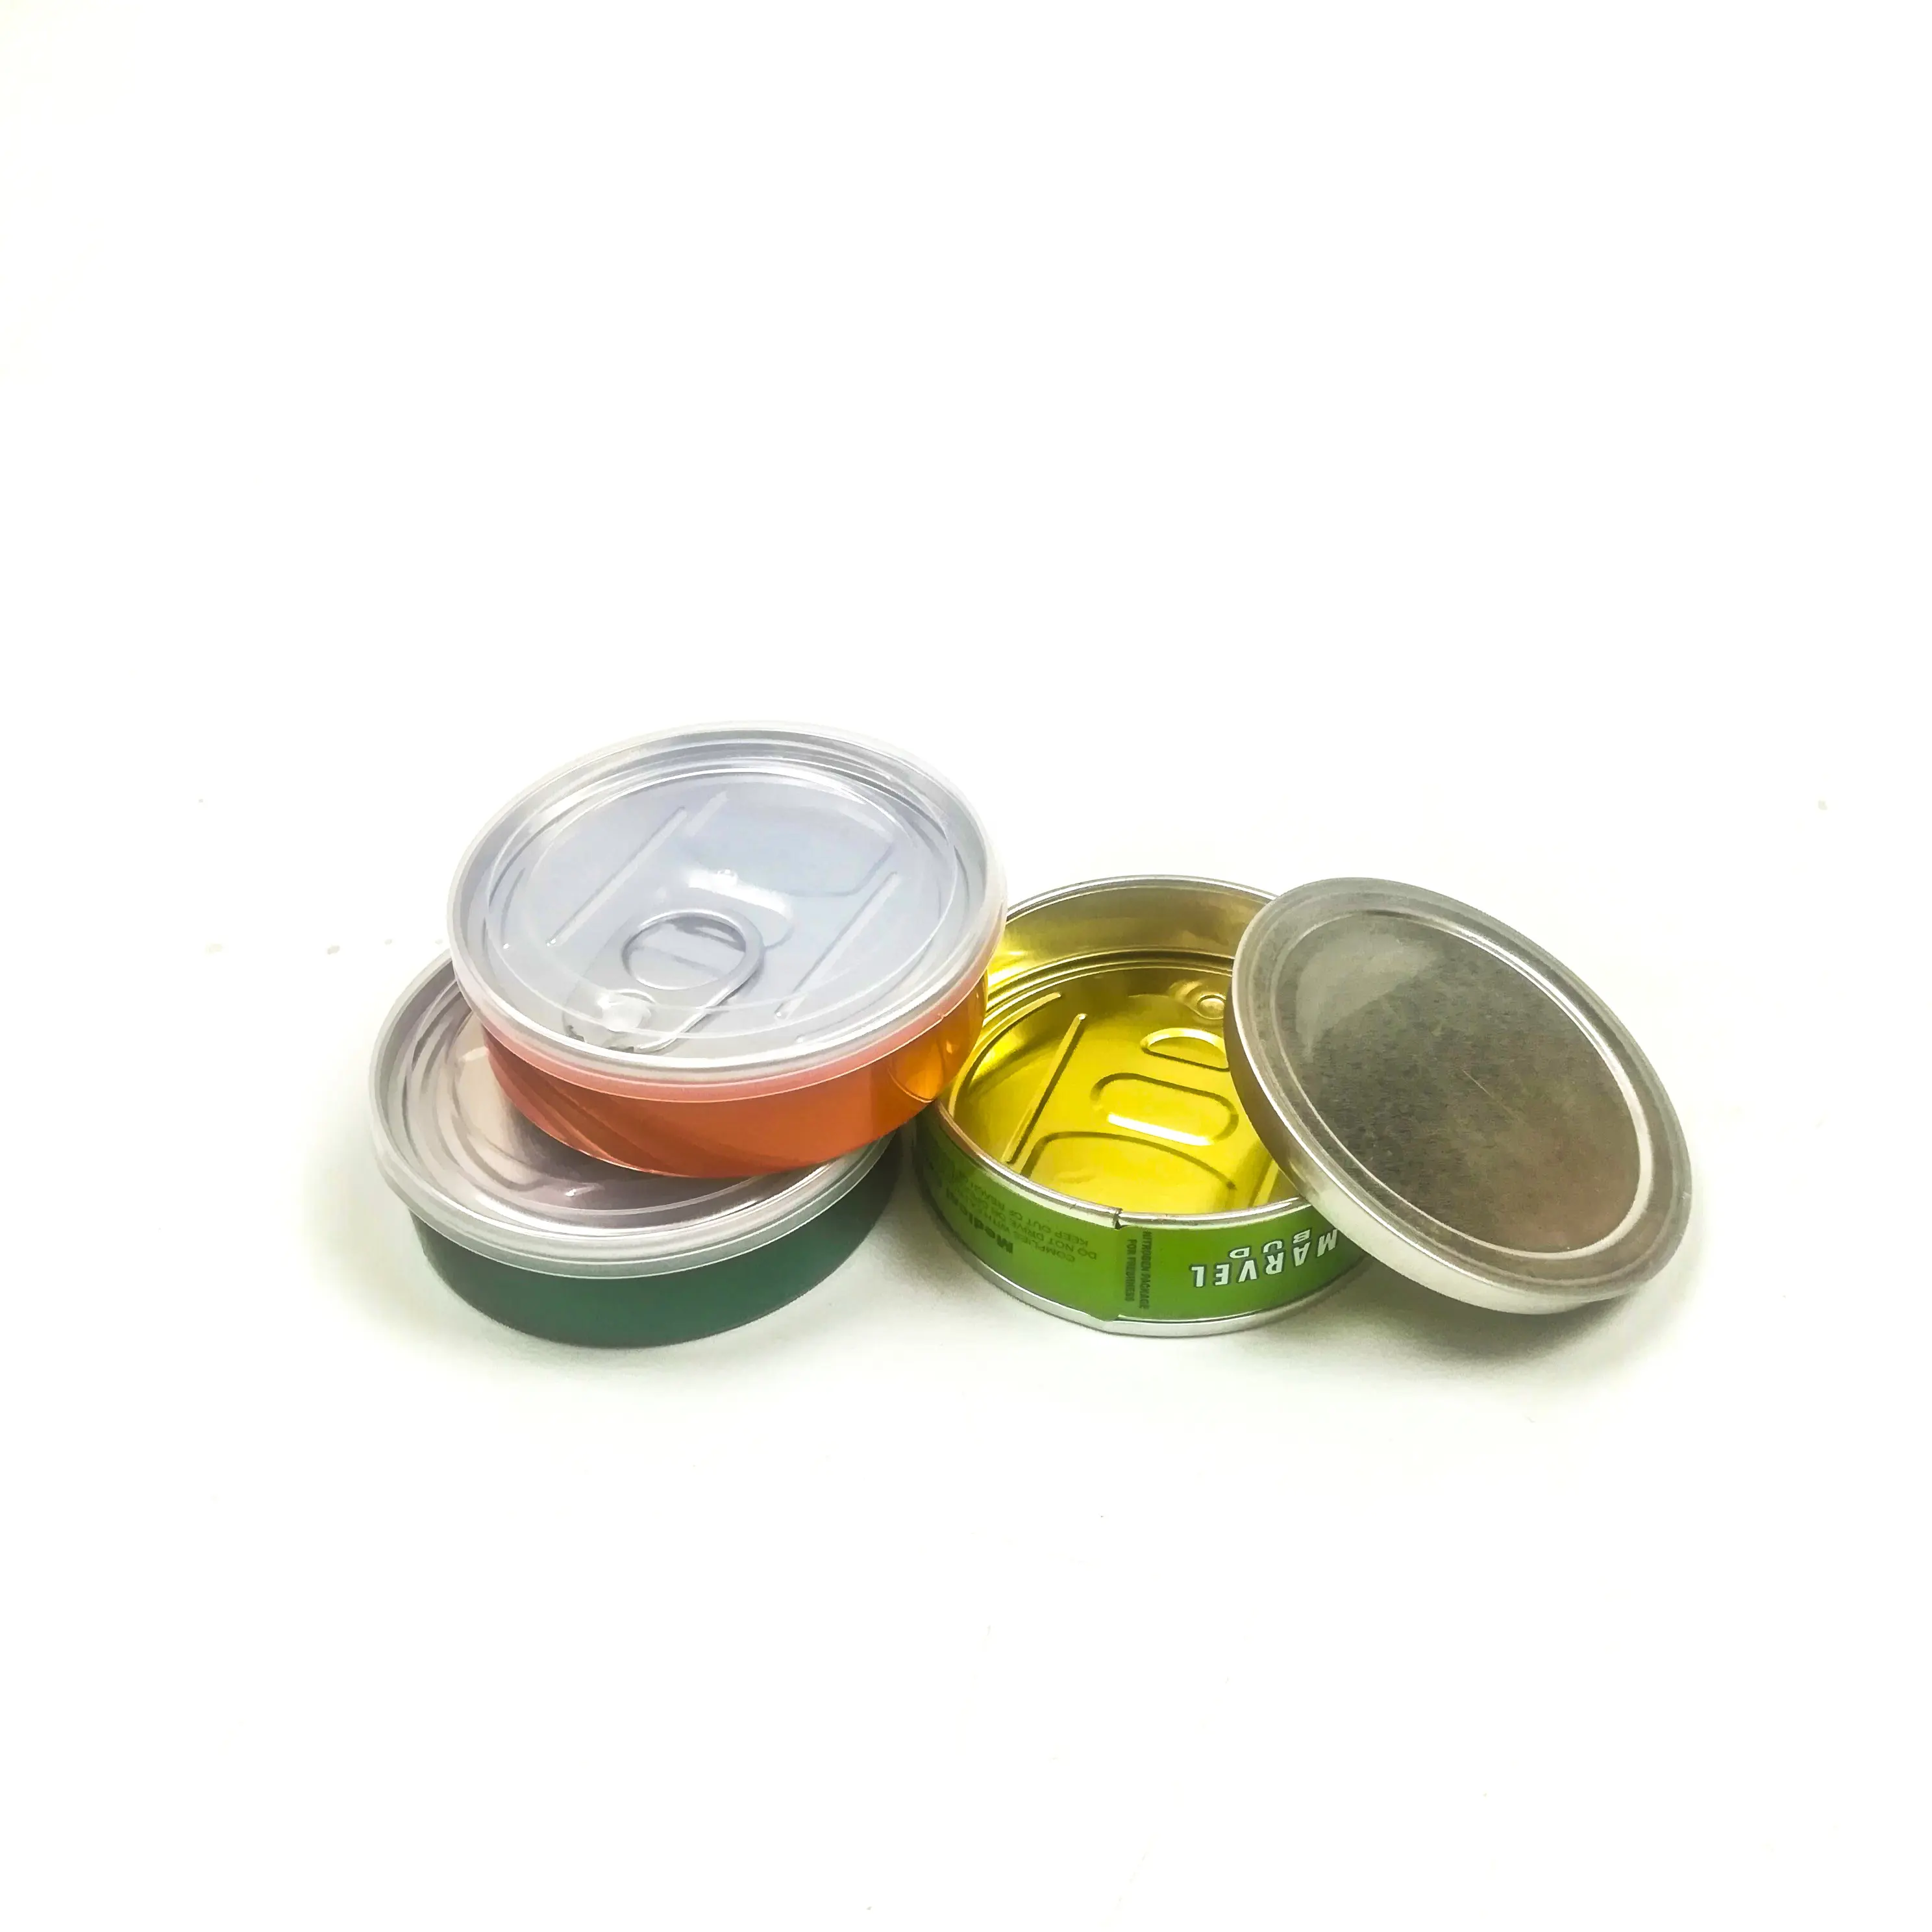 Cali pressitin lata de lata de atum 73.3*24mm, latas de alumínio com adesivos cali, etiquetas personalizadas